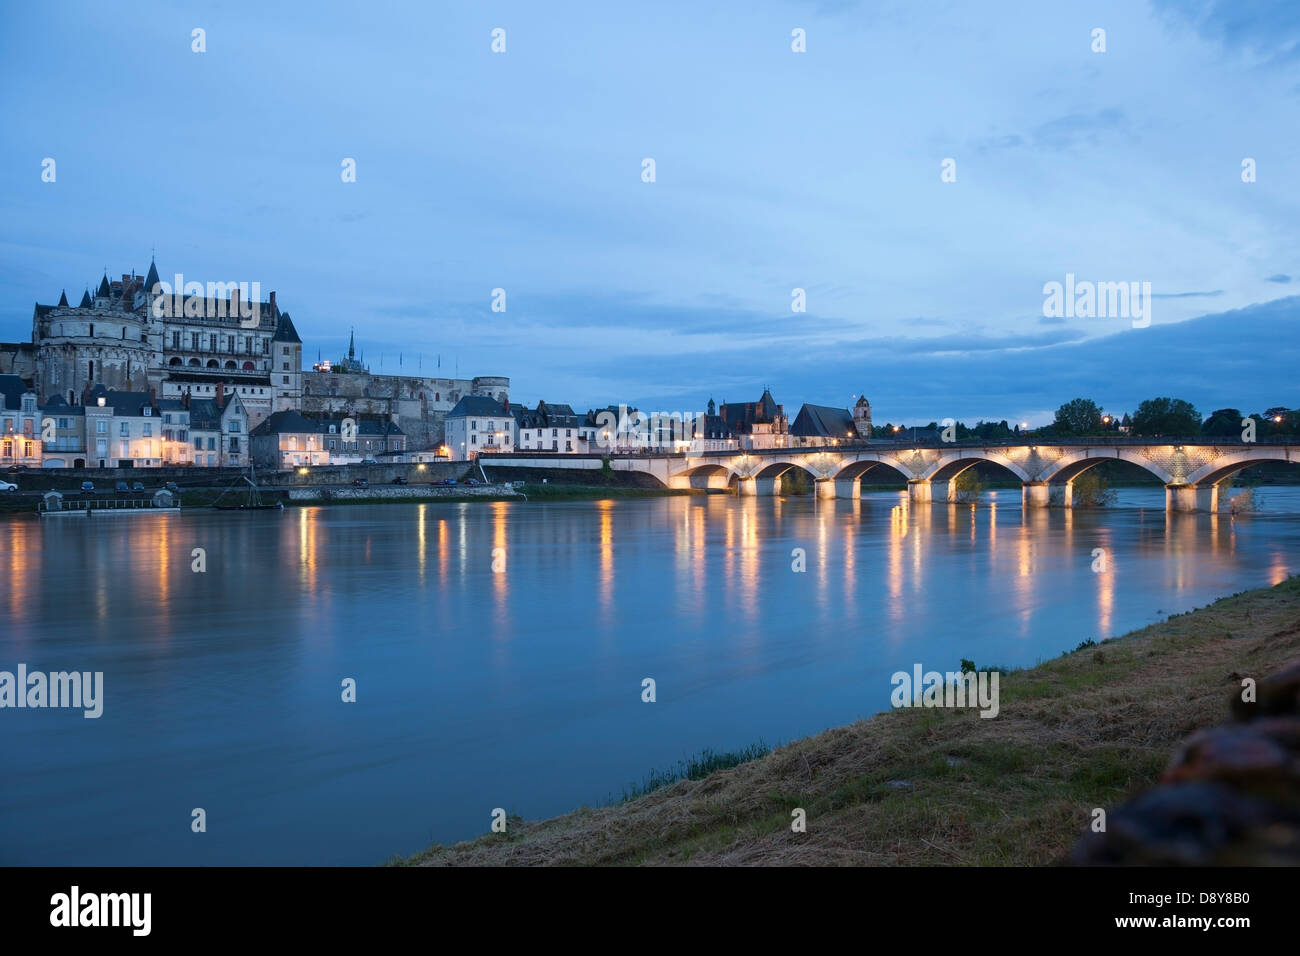 Le Château et les lumières du village d'Amboise à travers la Loire la nuit, Indre et Loire Région de France Europe Banque D'Images